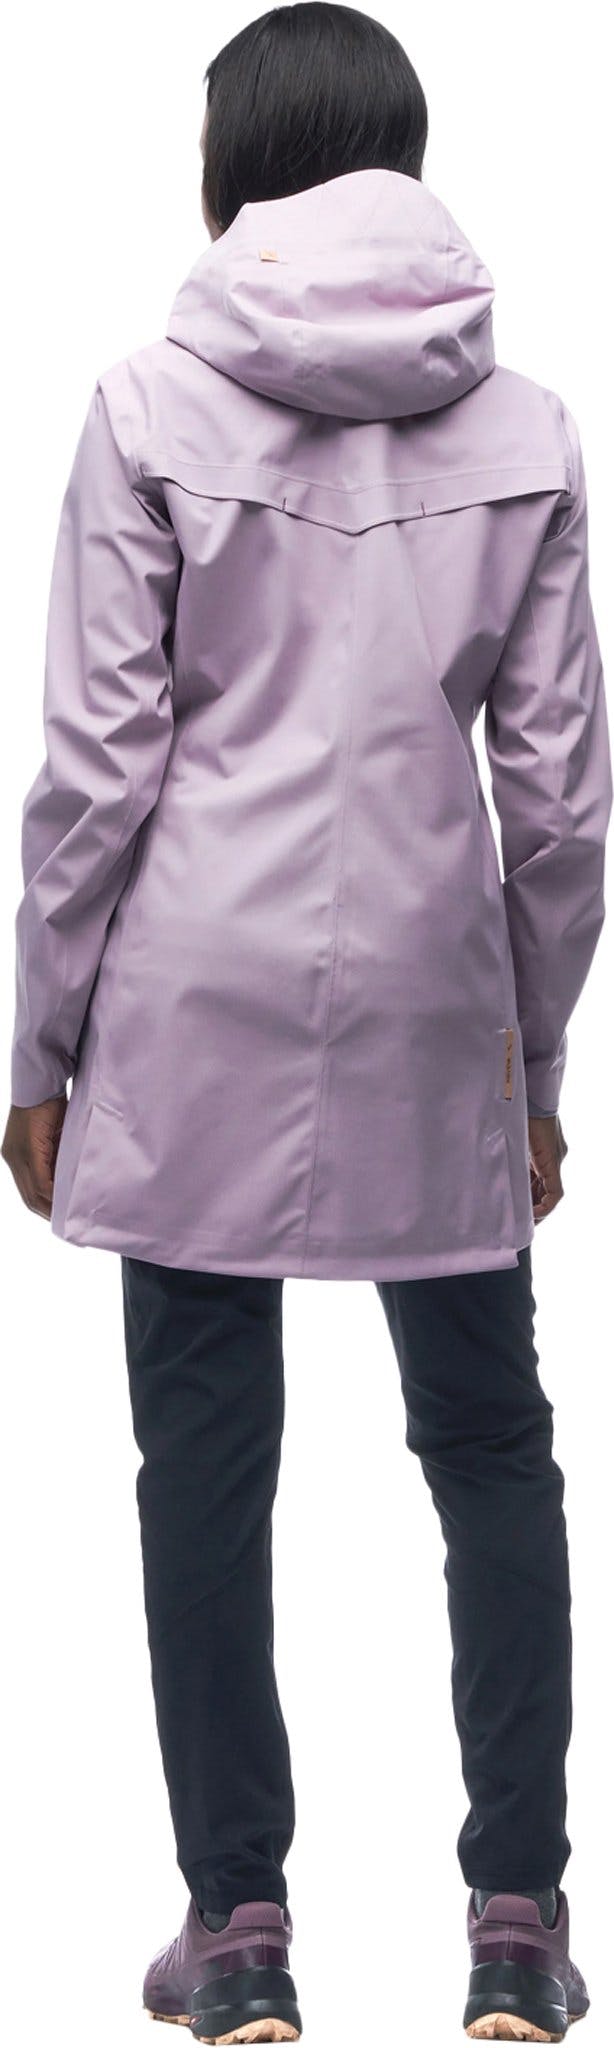 Numéro de l'image de la galerie de produits 2 pour le produit Manteau de pluie 2.5 couches Kisa II - Femme